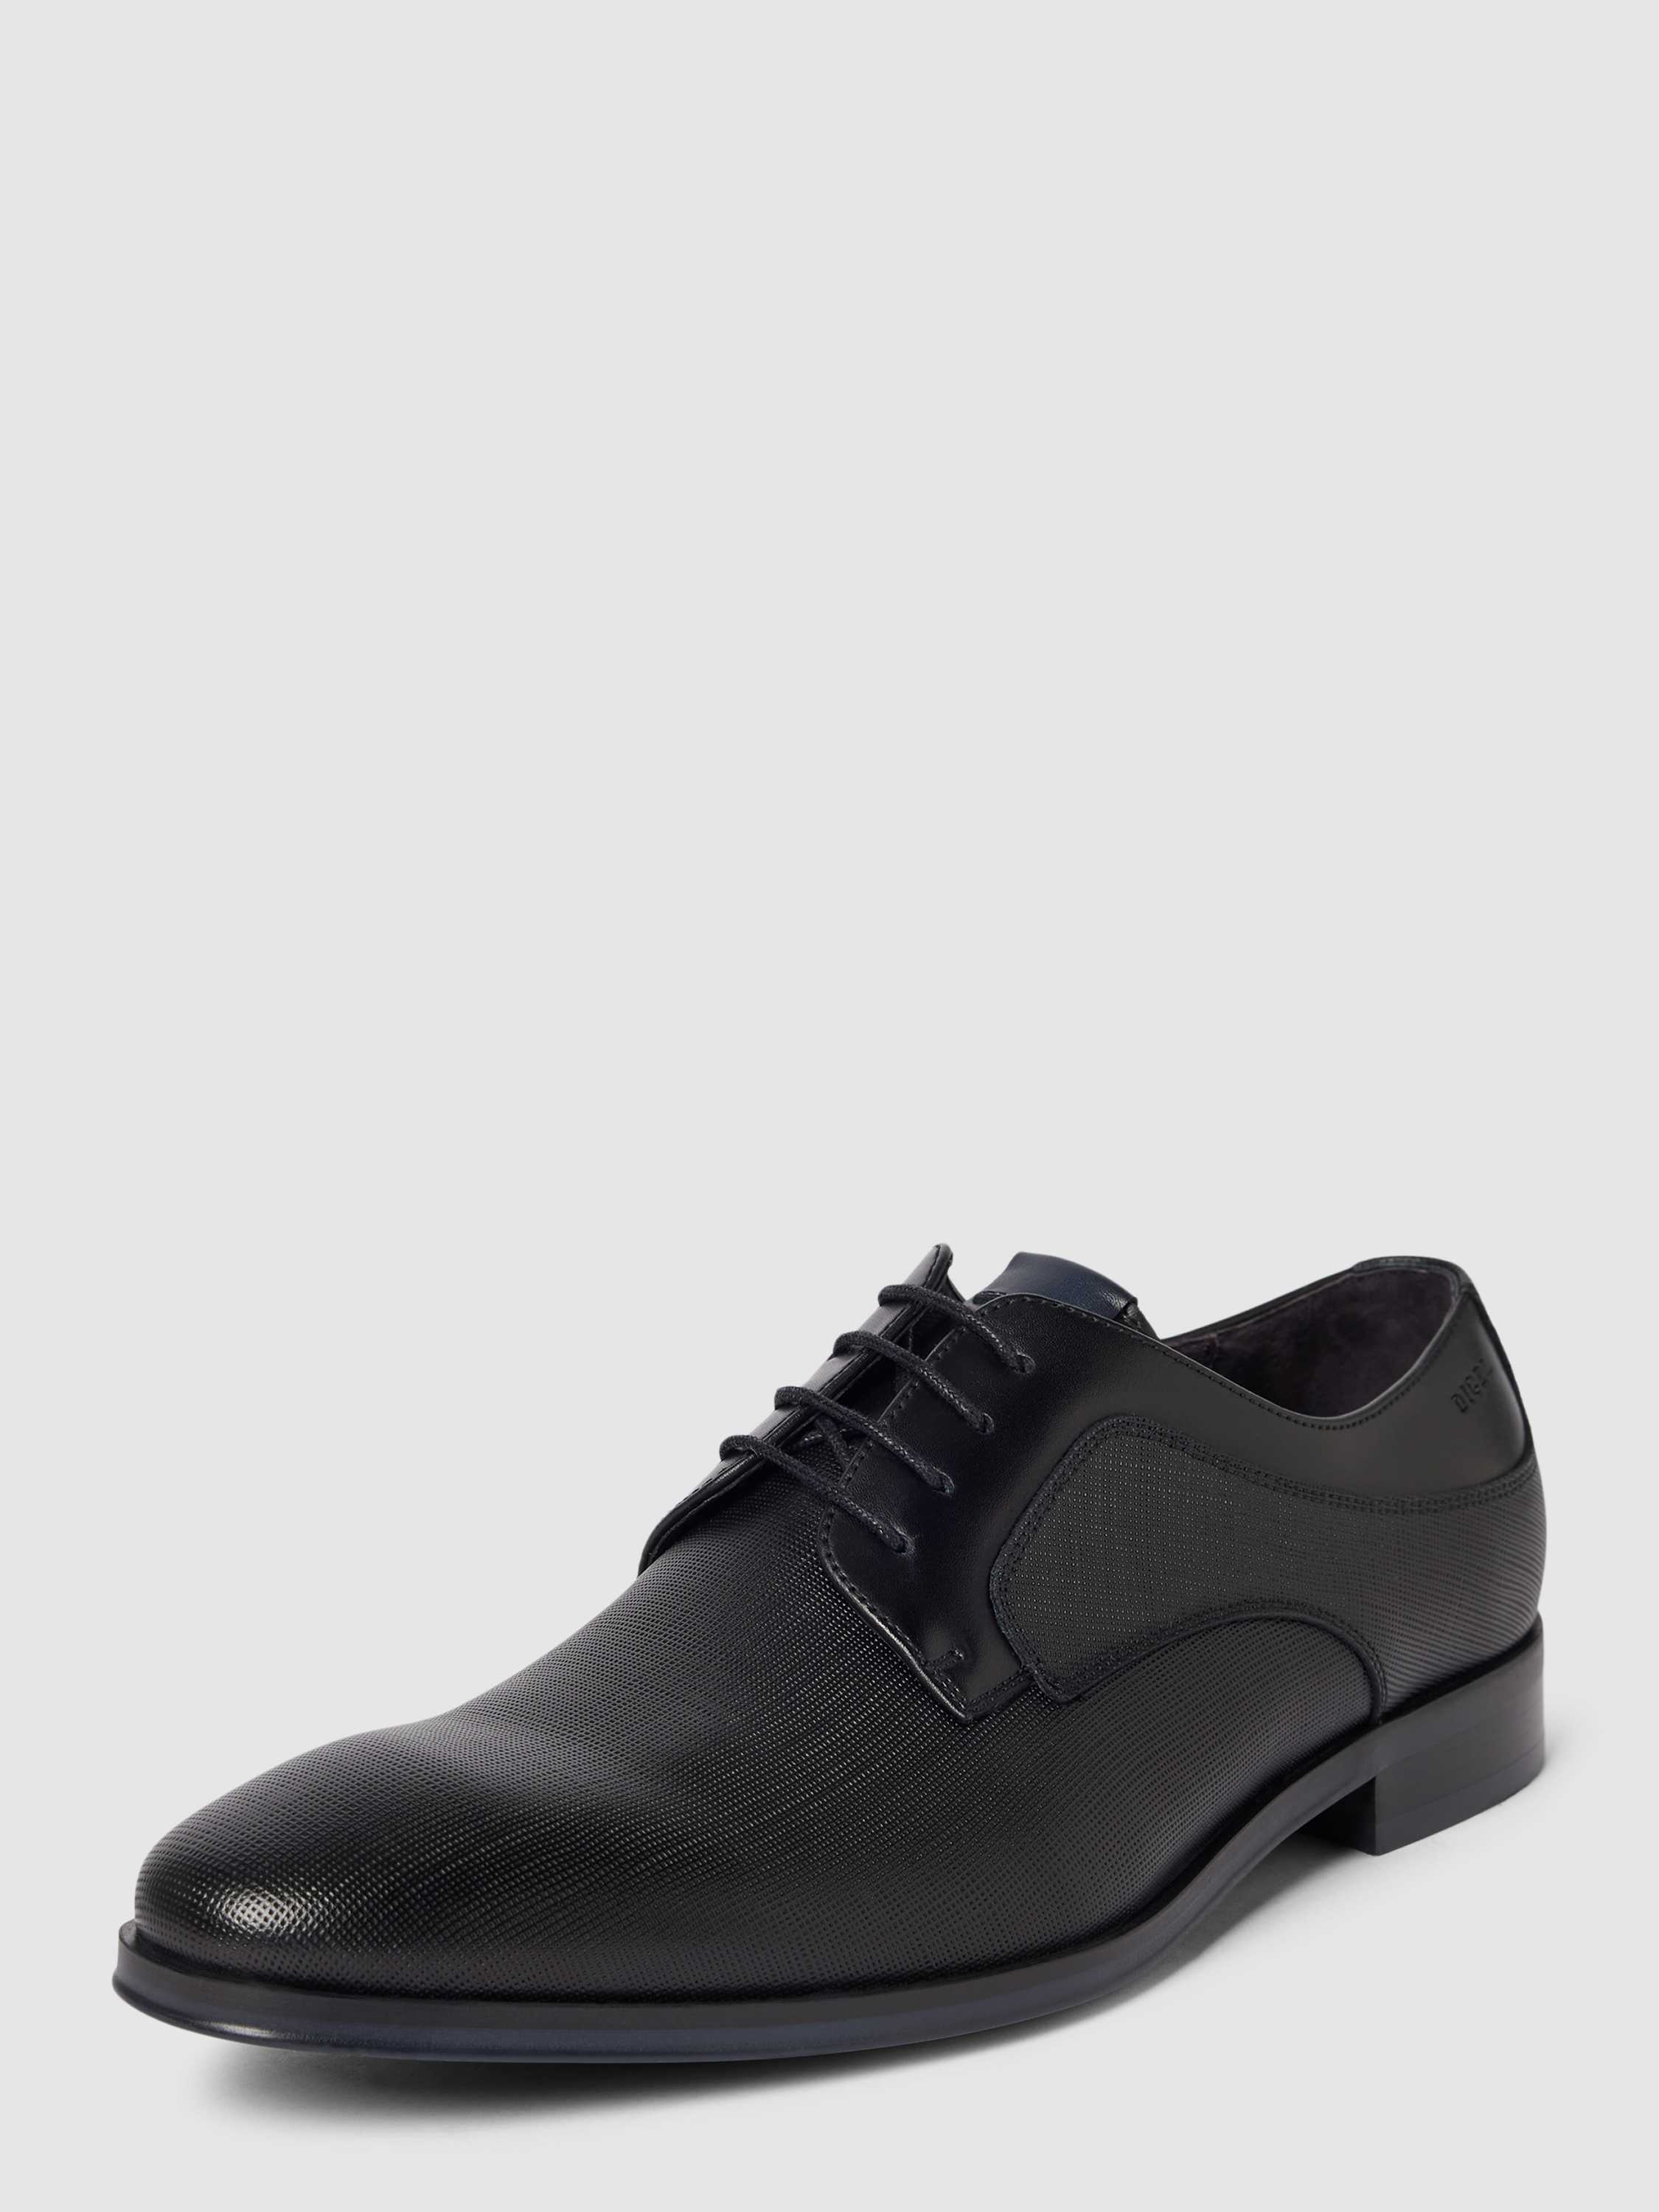 Derby-Schuhe mit Schnürverschluss Modell 'Sio', Peek & Cloppenburg